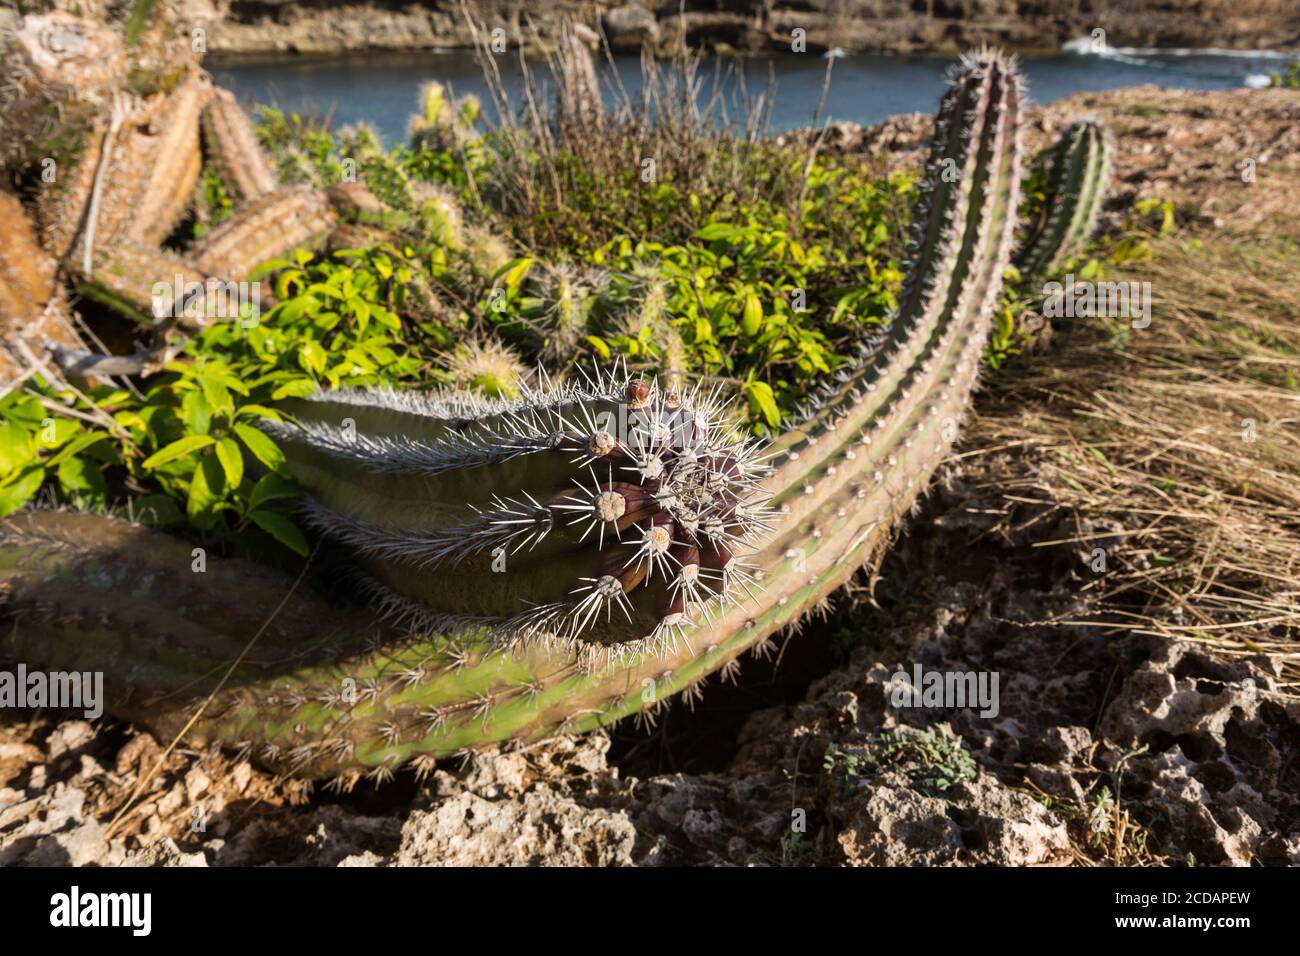 Eine der Hauptpflanzen im trockenen, xerischen Klima von Curacao ist Kaktus. Gezeigt ist ein Kolumnist Mexican Organ Pipe Cactus, Stenocereus griseus, mit ihm Stockfoto